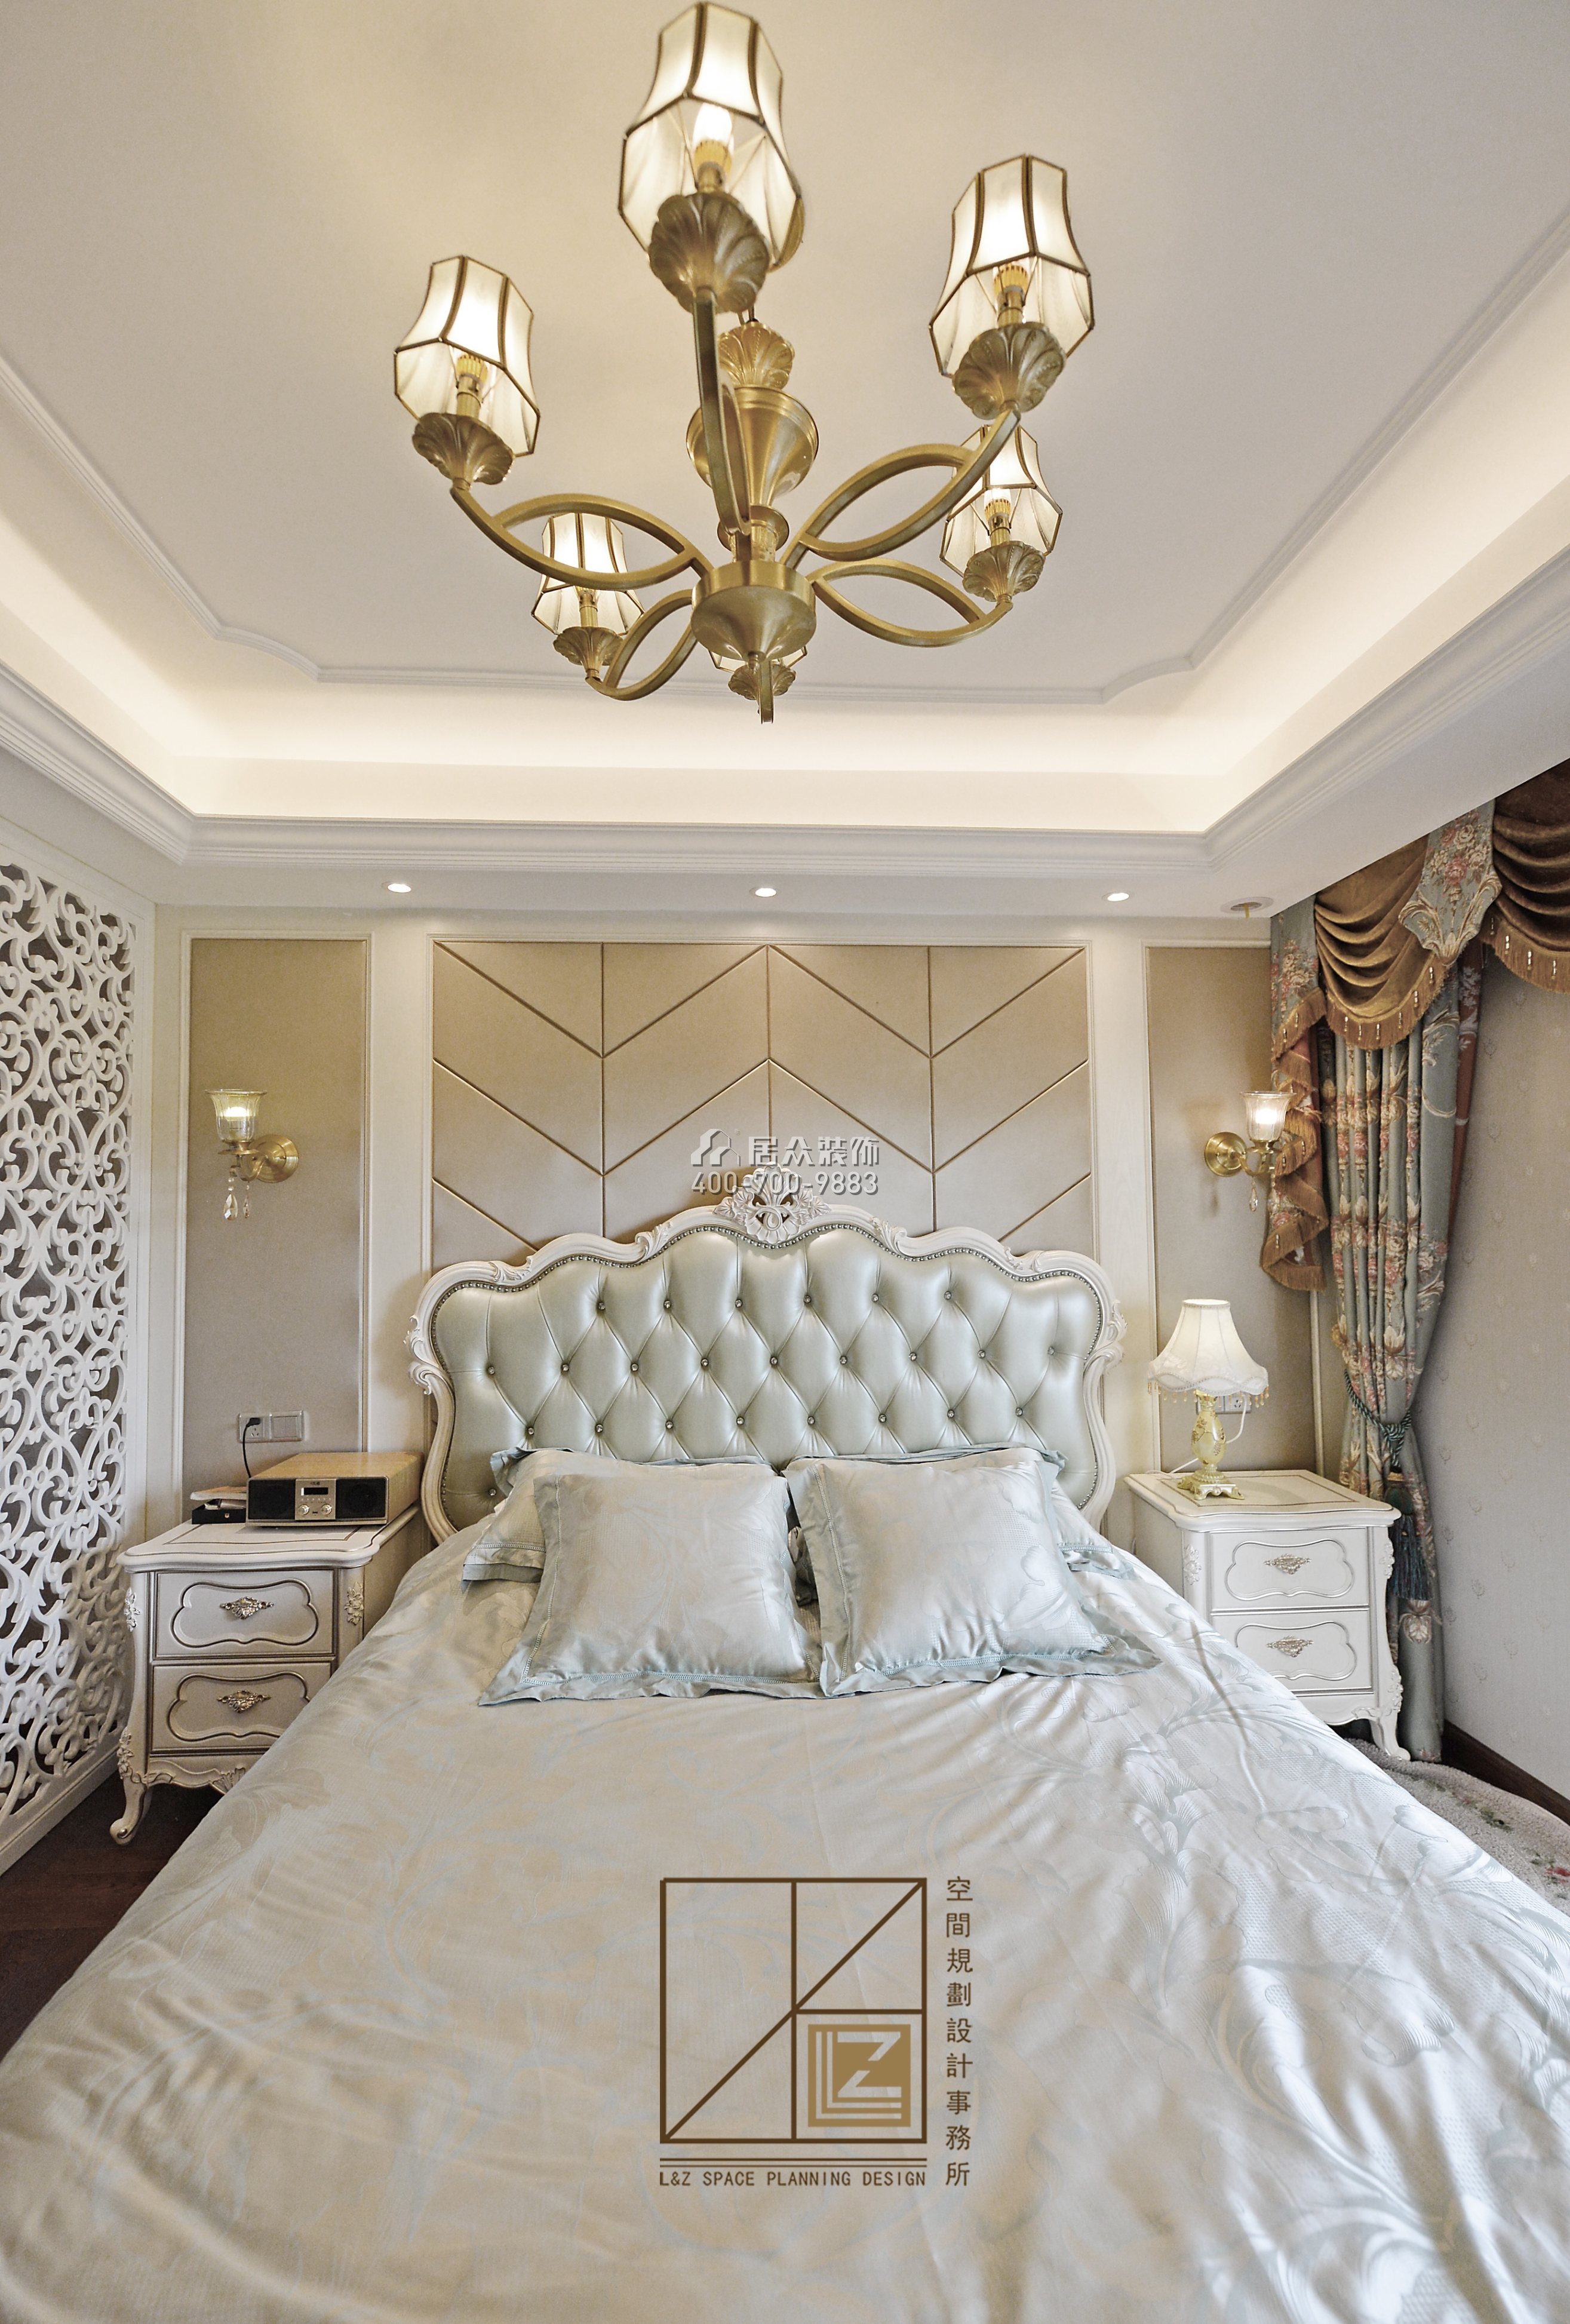 八方小区360平方米欧式风格复式户型卧室装修效果图